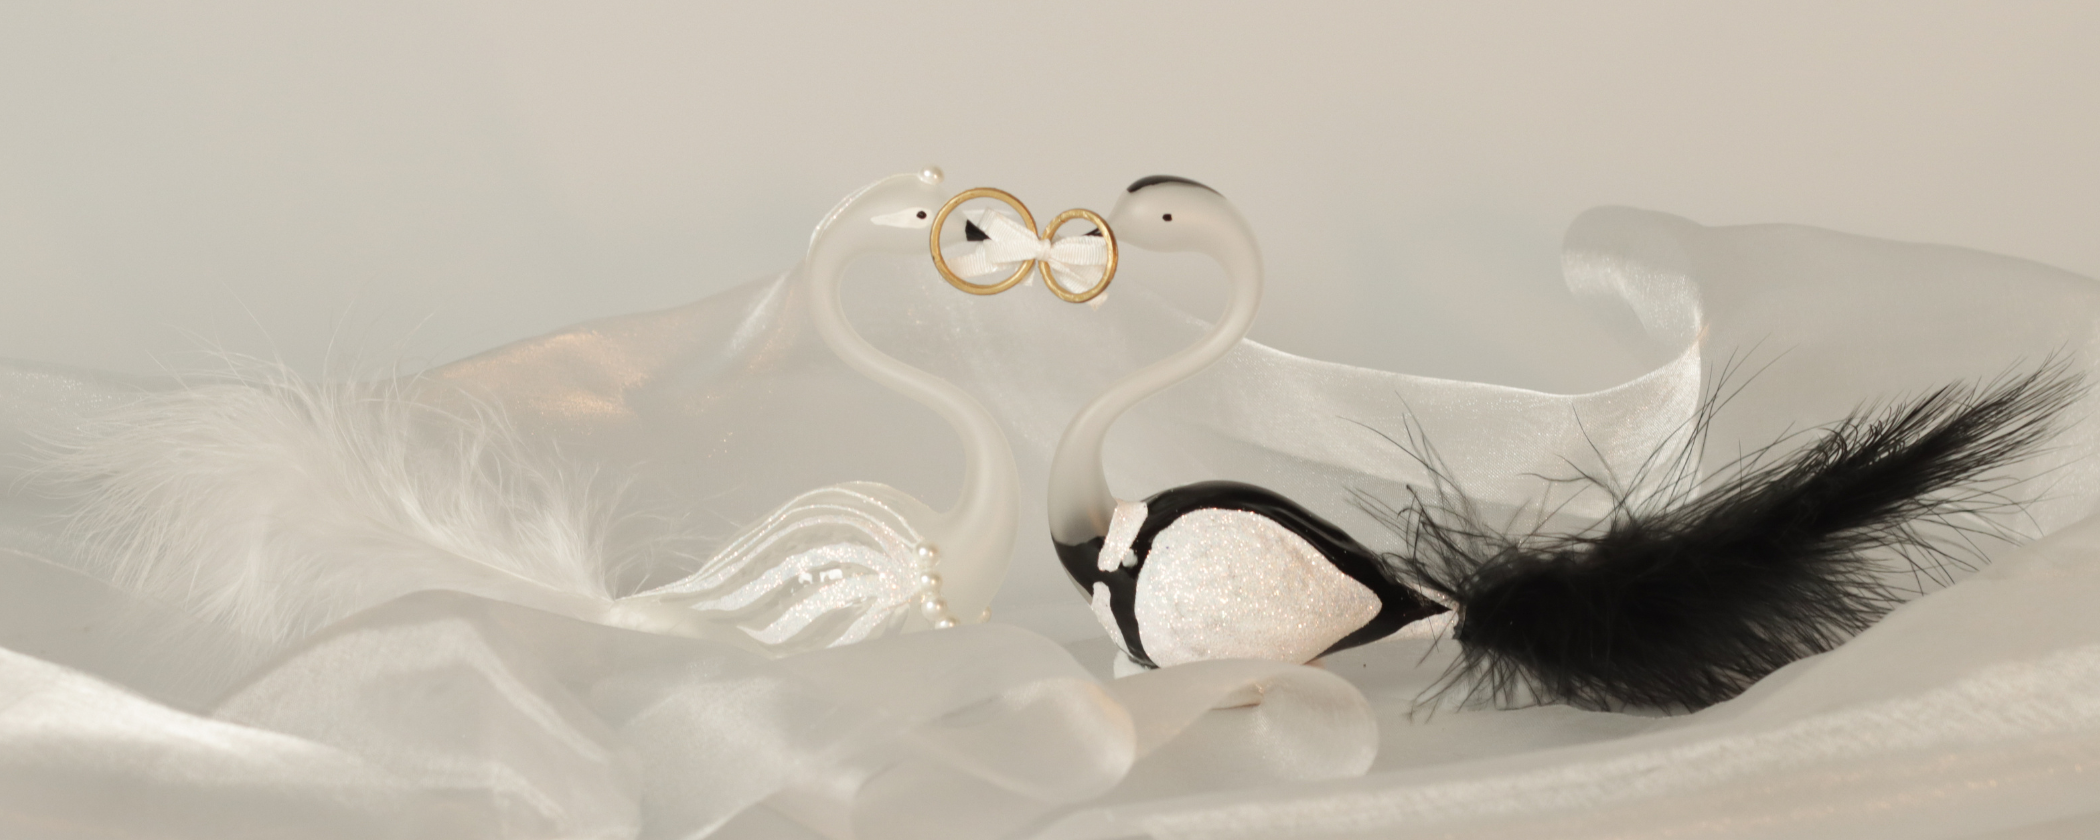 Svatební ozdoby - svatební labutí páry